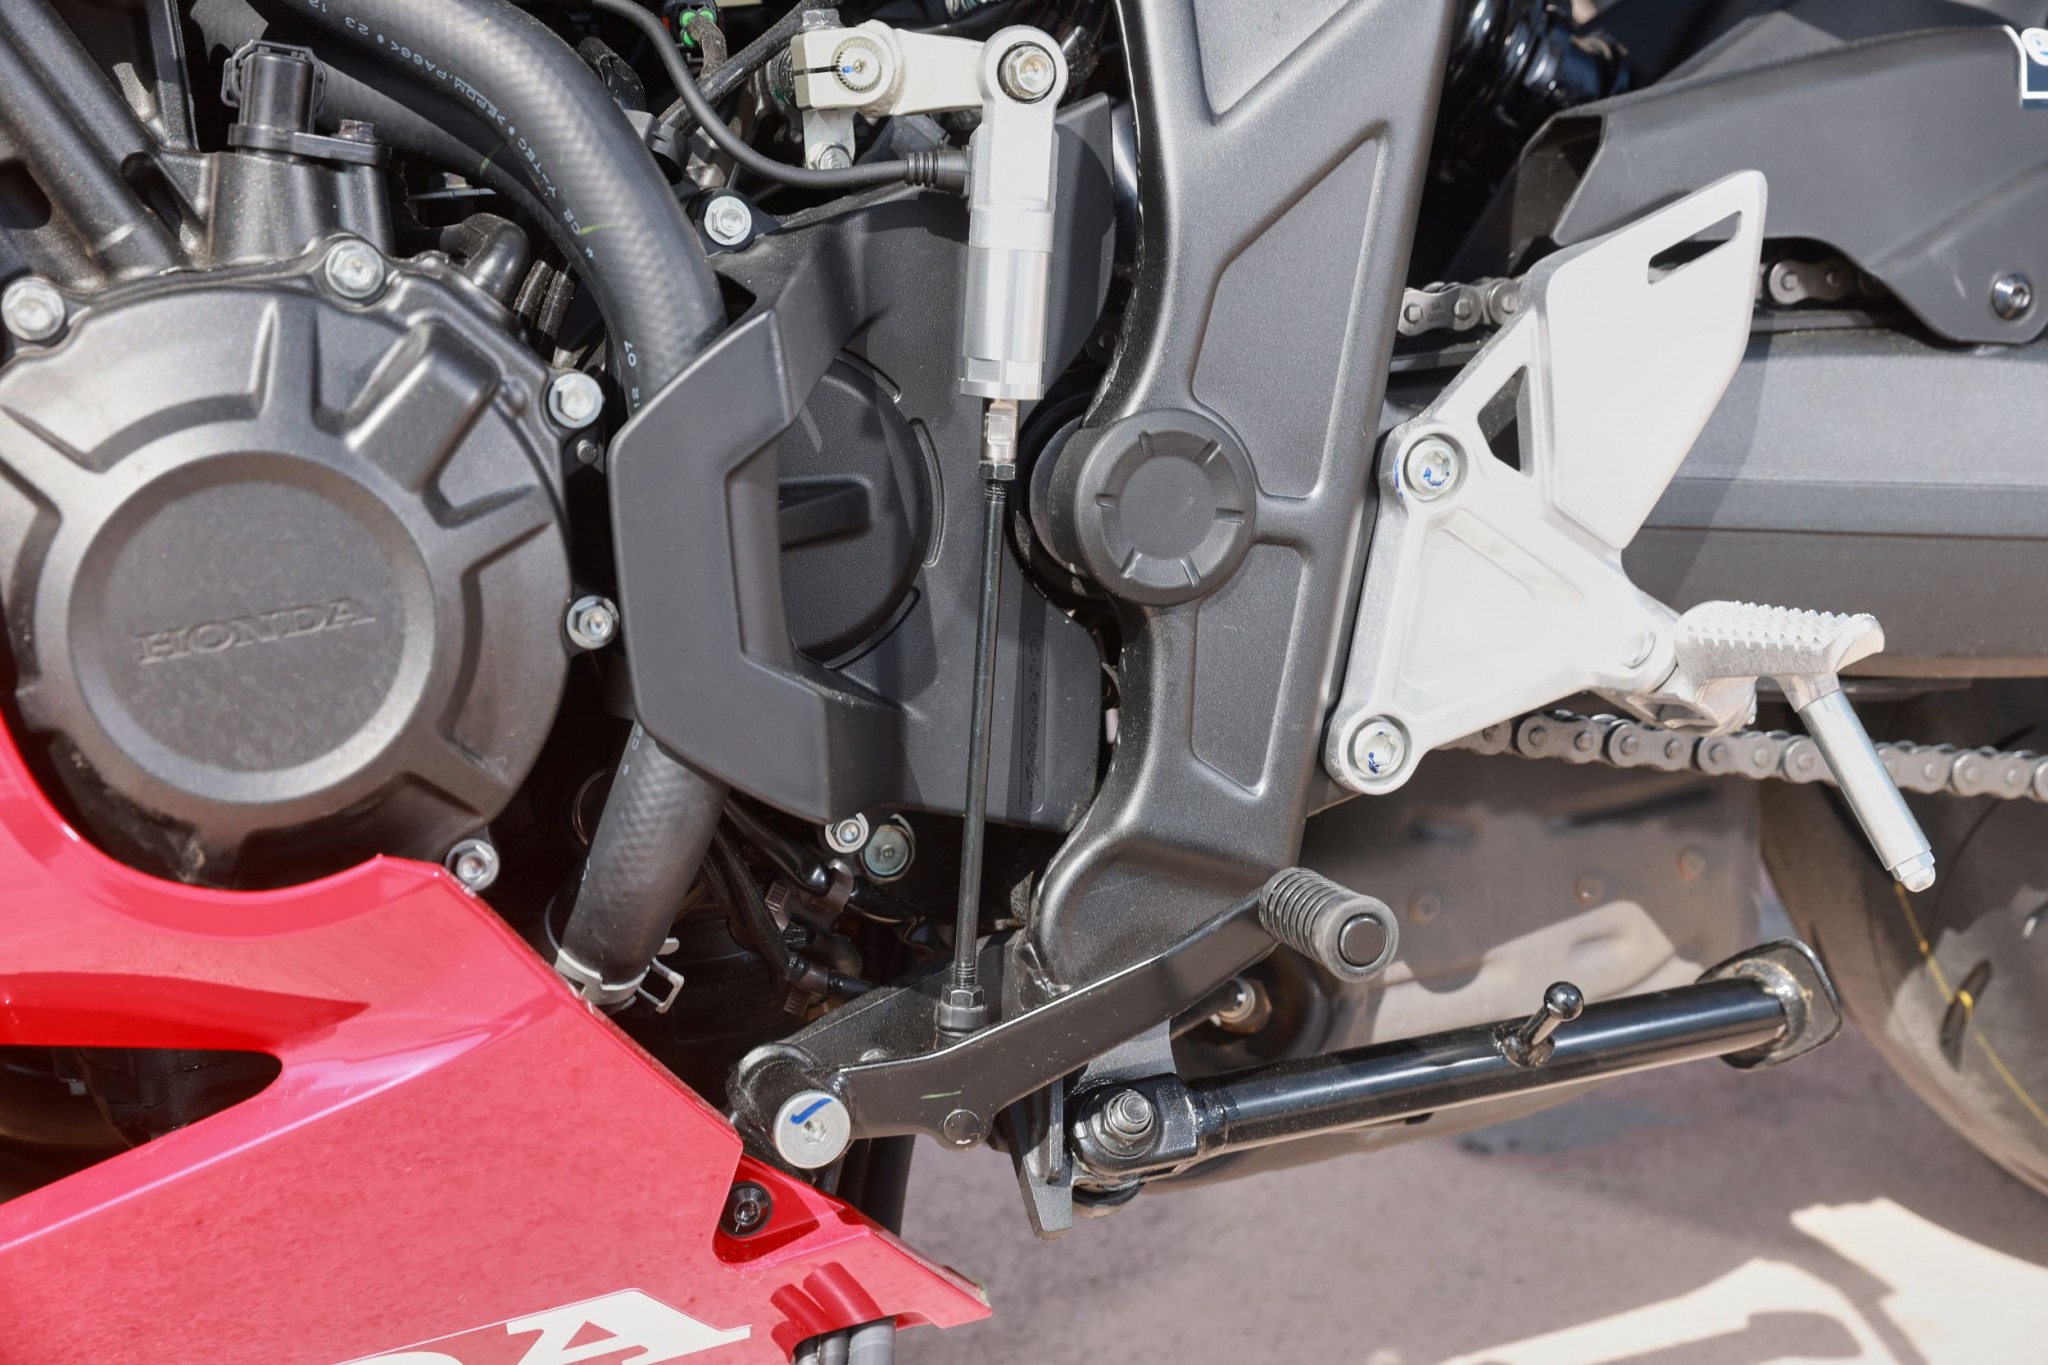 Test elektronske kvačila Honda CBR650R 2024

Honda je nedavno predstavila novu verziju svog popularnog motocikla CBR650R, koji sada dolazi sa elektronskim kvačilom, poznatim kao E-Clutch. Ova inovacija obećava da će olakšati vožnju omogućavajući vozačima da menjaju brzine bez potrebe za ručnim korišćenjem kvačila. 

Elektronsko kvačilo funkcioniše tako što automatski reguliše pritisak potreban za aktiviranje kvačila, što omogućava glatke promene brzina bez prekida u isporuci snage. Ovo je posebno korisno pri vožnji u gradu, gde česte promene brzina mogu biti naporne i otežavaju koncentraciju na saobraćaj.

Testiranje ovog sistema pokazalo je da E-Clutch ne samo da olakšava upravljanje motociklom, već i povećava sigurnost vožnje. Vozači mogu da se fokusiraju na okolinu bez brige o mehaničkim aspektima vožnje, što je posebno važno za manje iskusne vozače.

Honda CBR650R sa elektronskim kvačilom biće dostupna na tržištu od 2024. godine i očekuje se da će privući veliki broj kupaca, kako iskusnih tako i onih koji tek ulaze u svet motociklizma. Ovaj model predstavlja značajan korak napred u tehnologiji motocikala i potencijalno postavlja nove standarde u industriji. - Слика 9